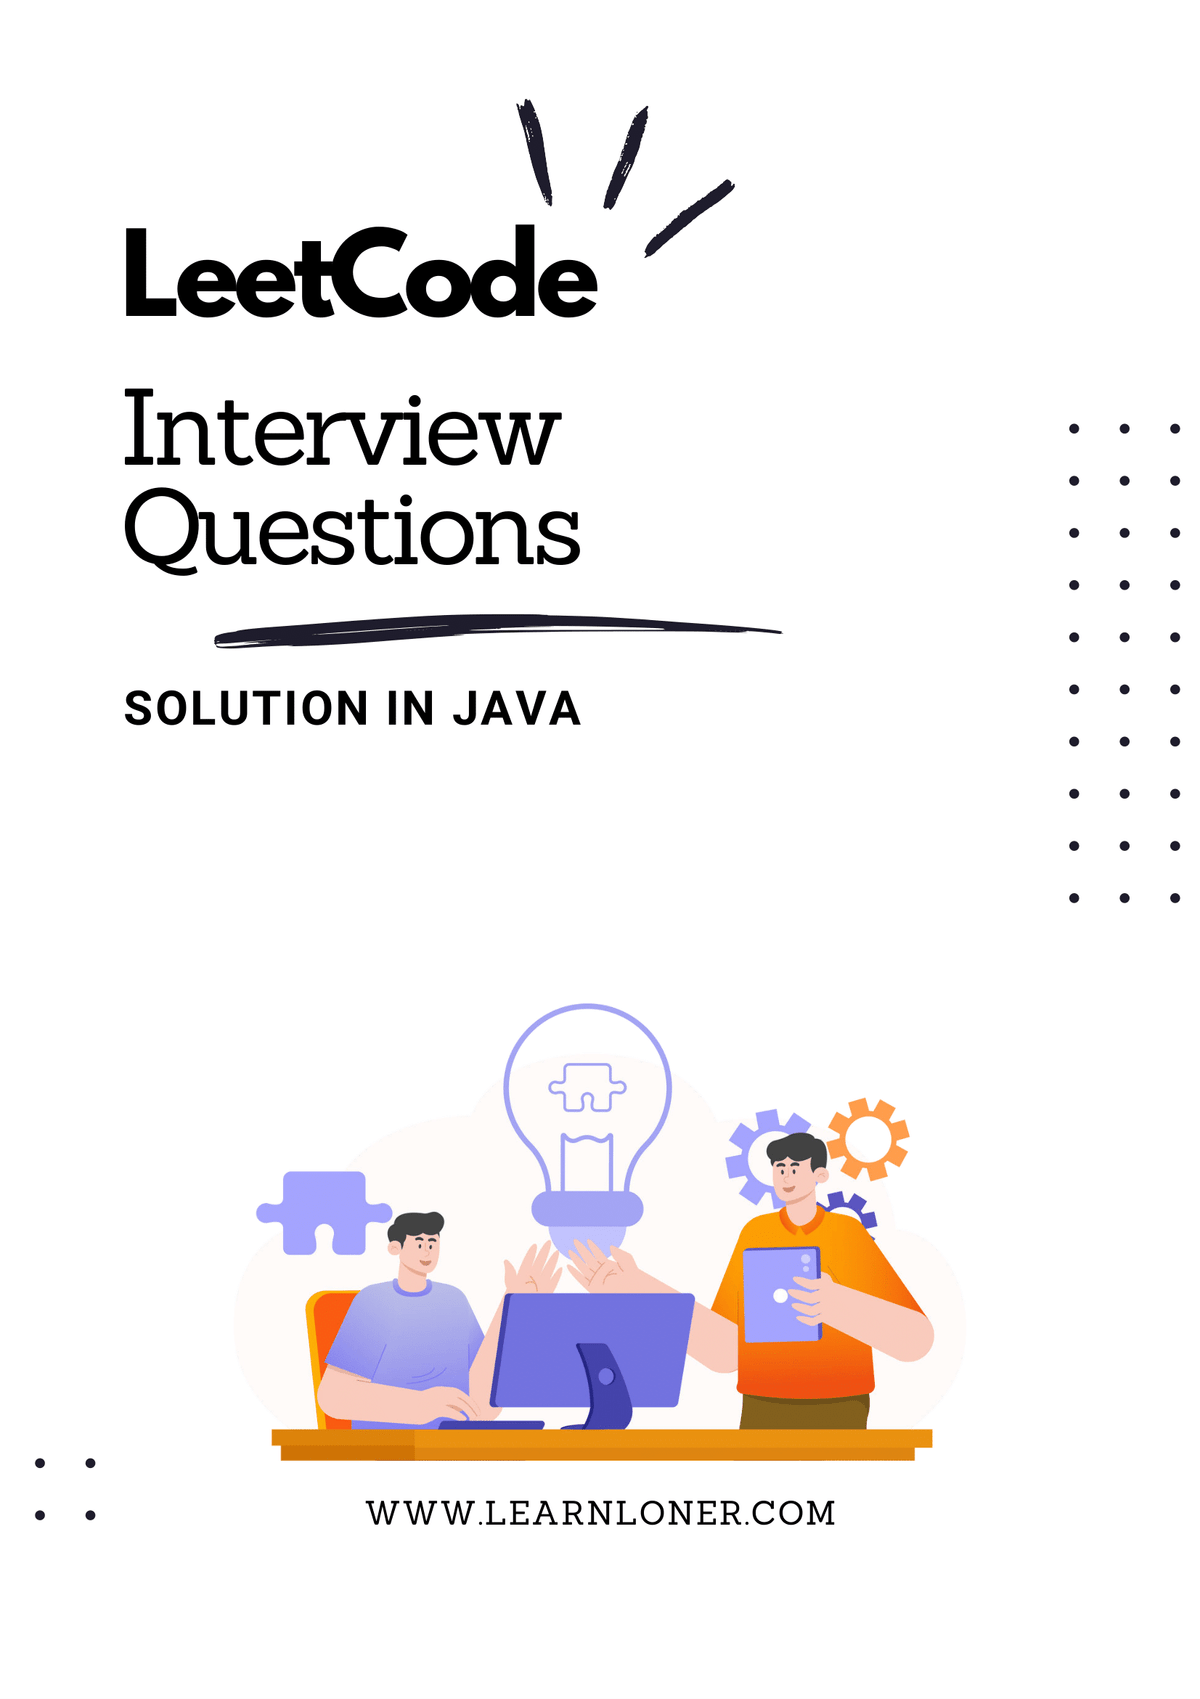 Leetcode interview question in Java